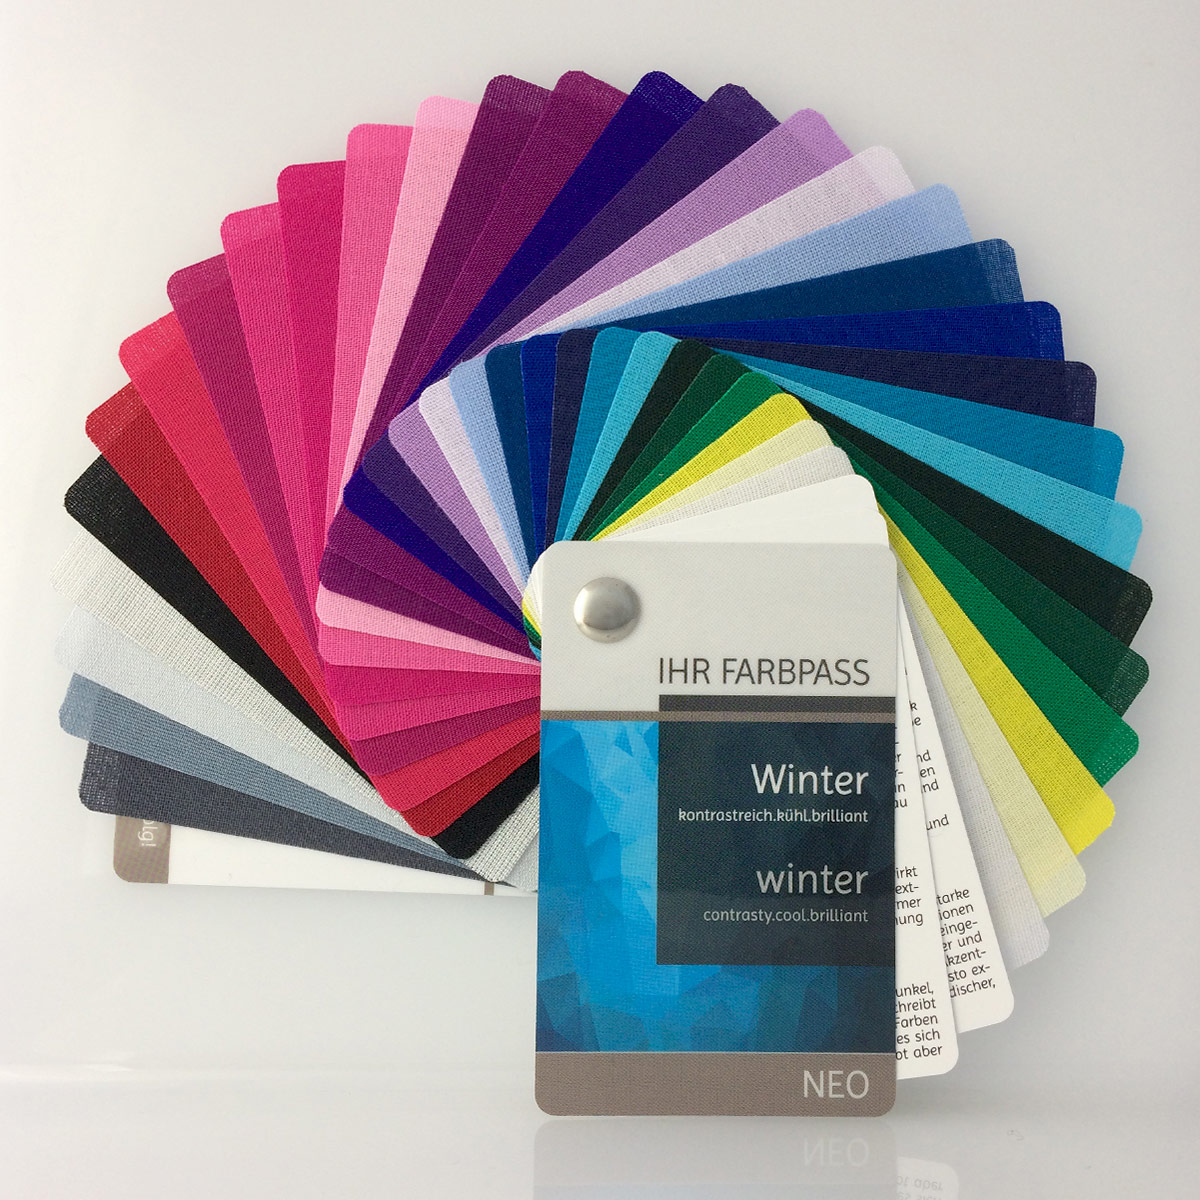 Farbpass Wintertyp zur Farbberatung, Vorderseite - Neo | Komood